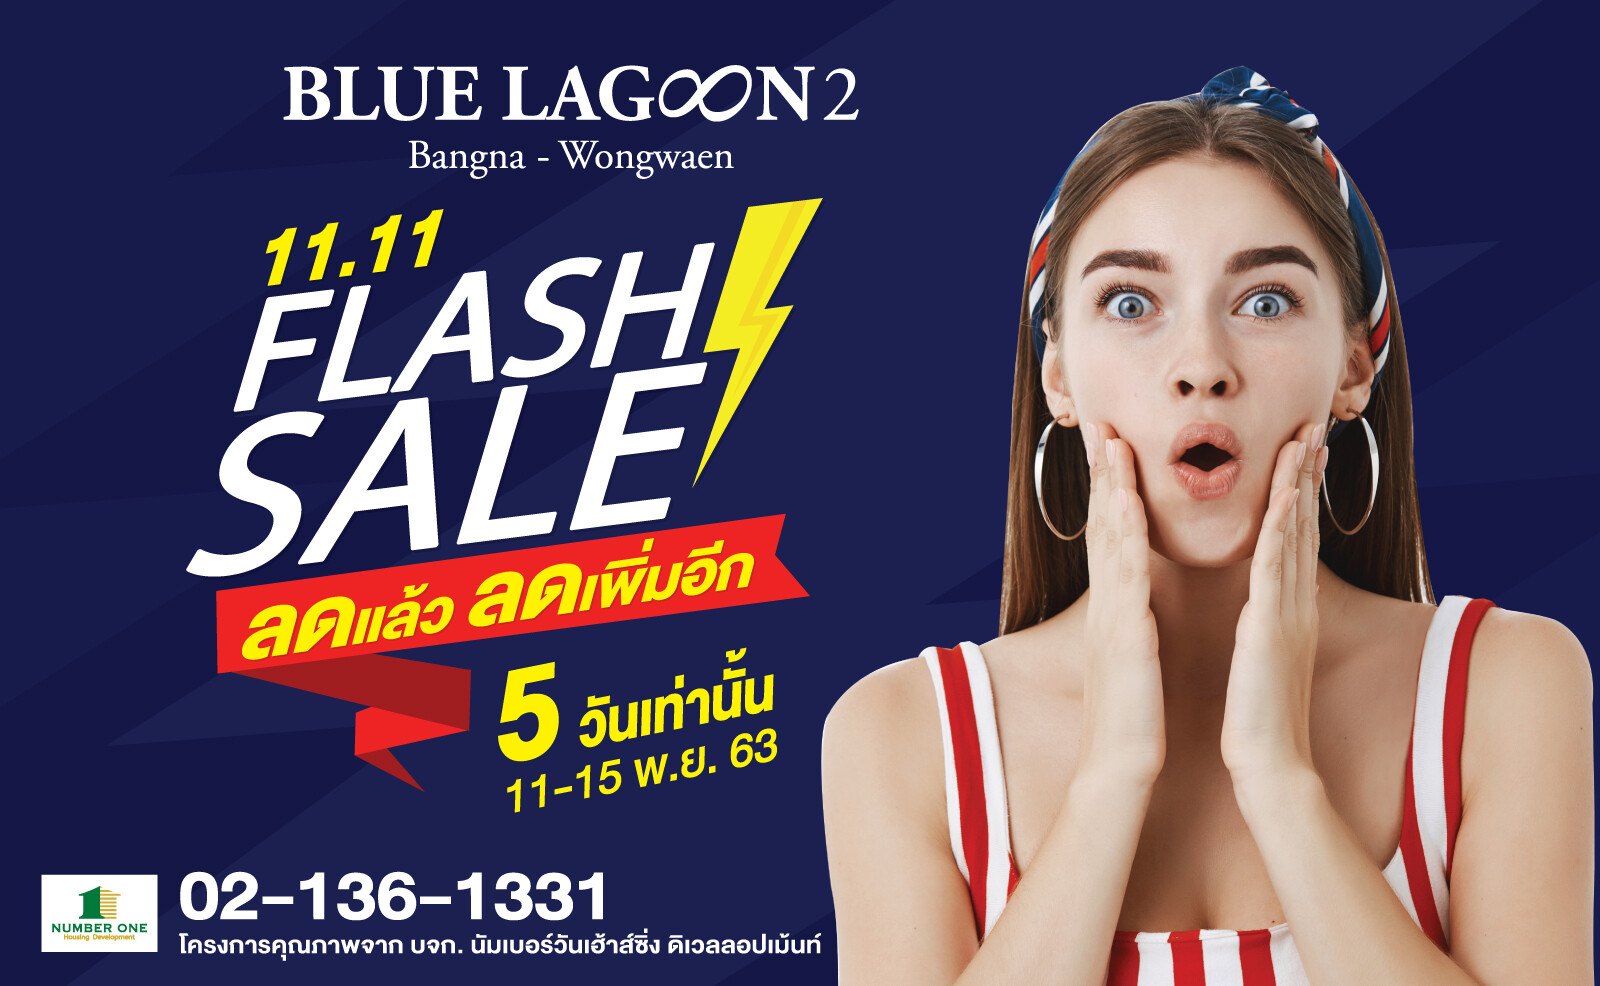 บลูลากูน 2  จัดแคมเปญ flash sale!! 11.11 ลดแล้วลดเพิ่มอีก 100,000 บาท เพียง 3 ยูนิตเท่านั้น!!